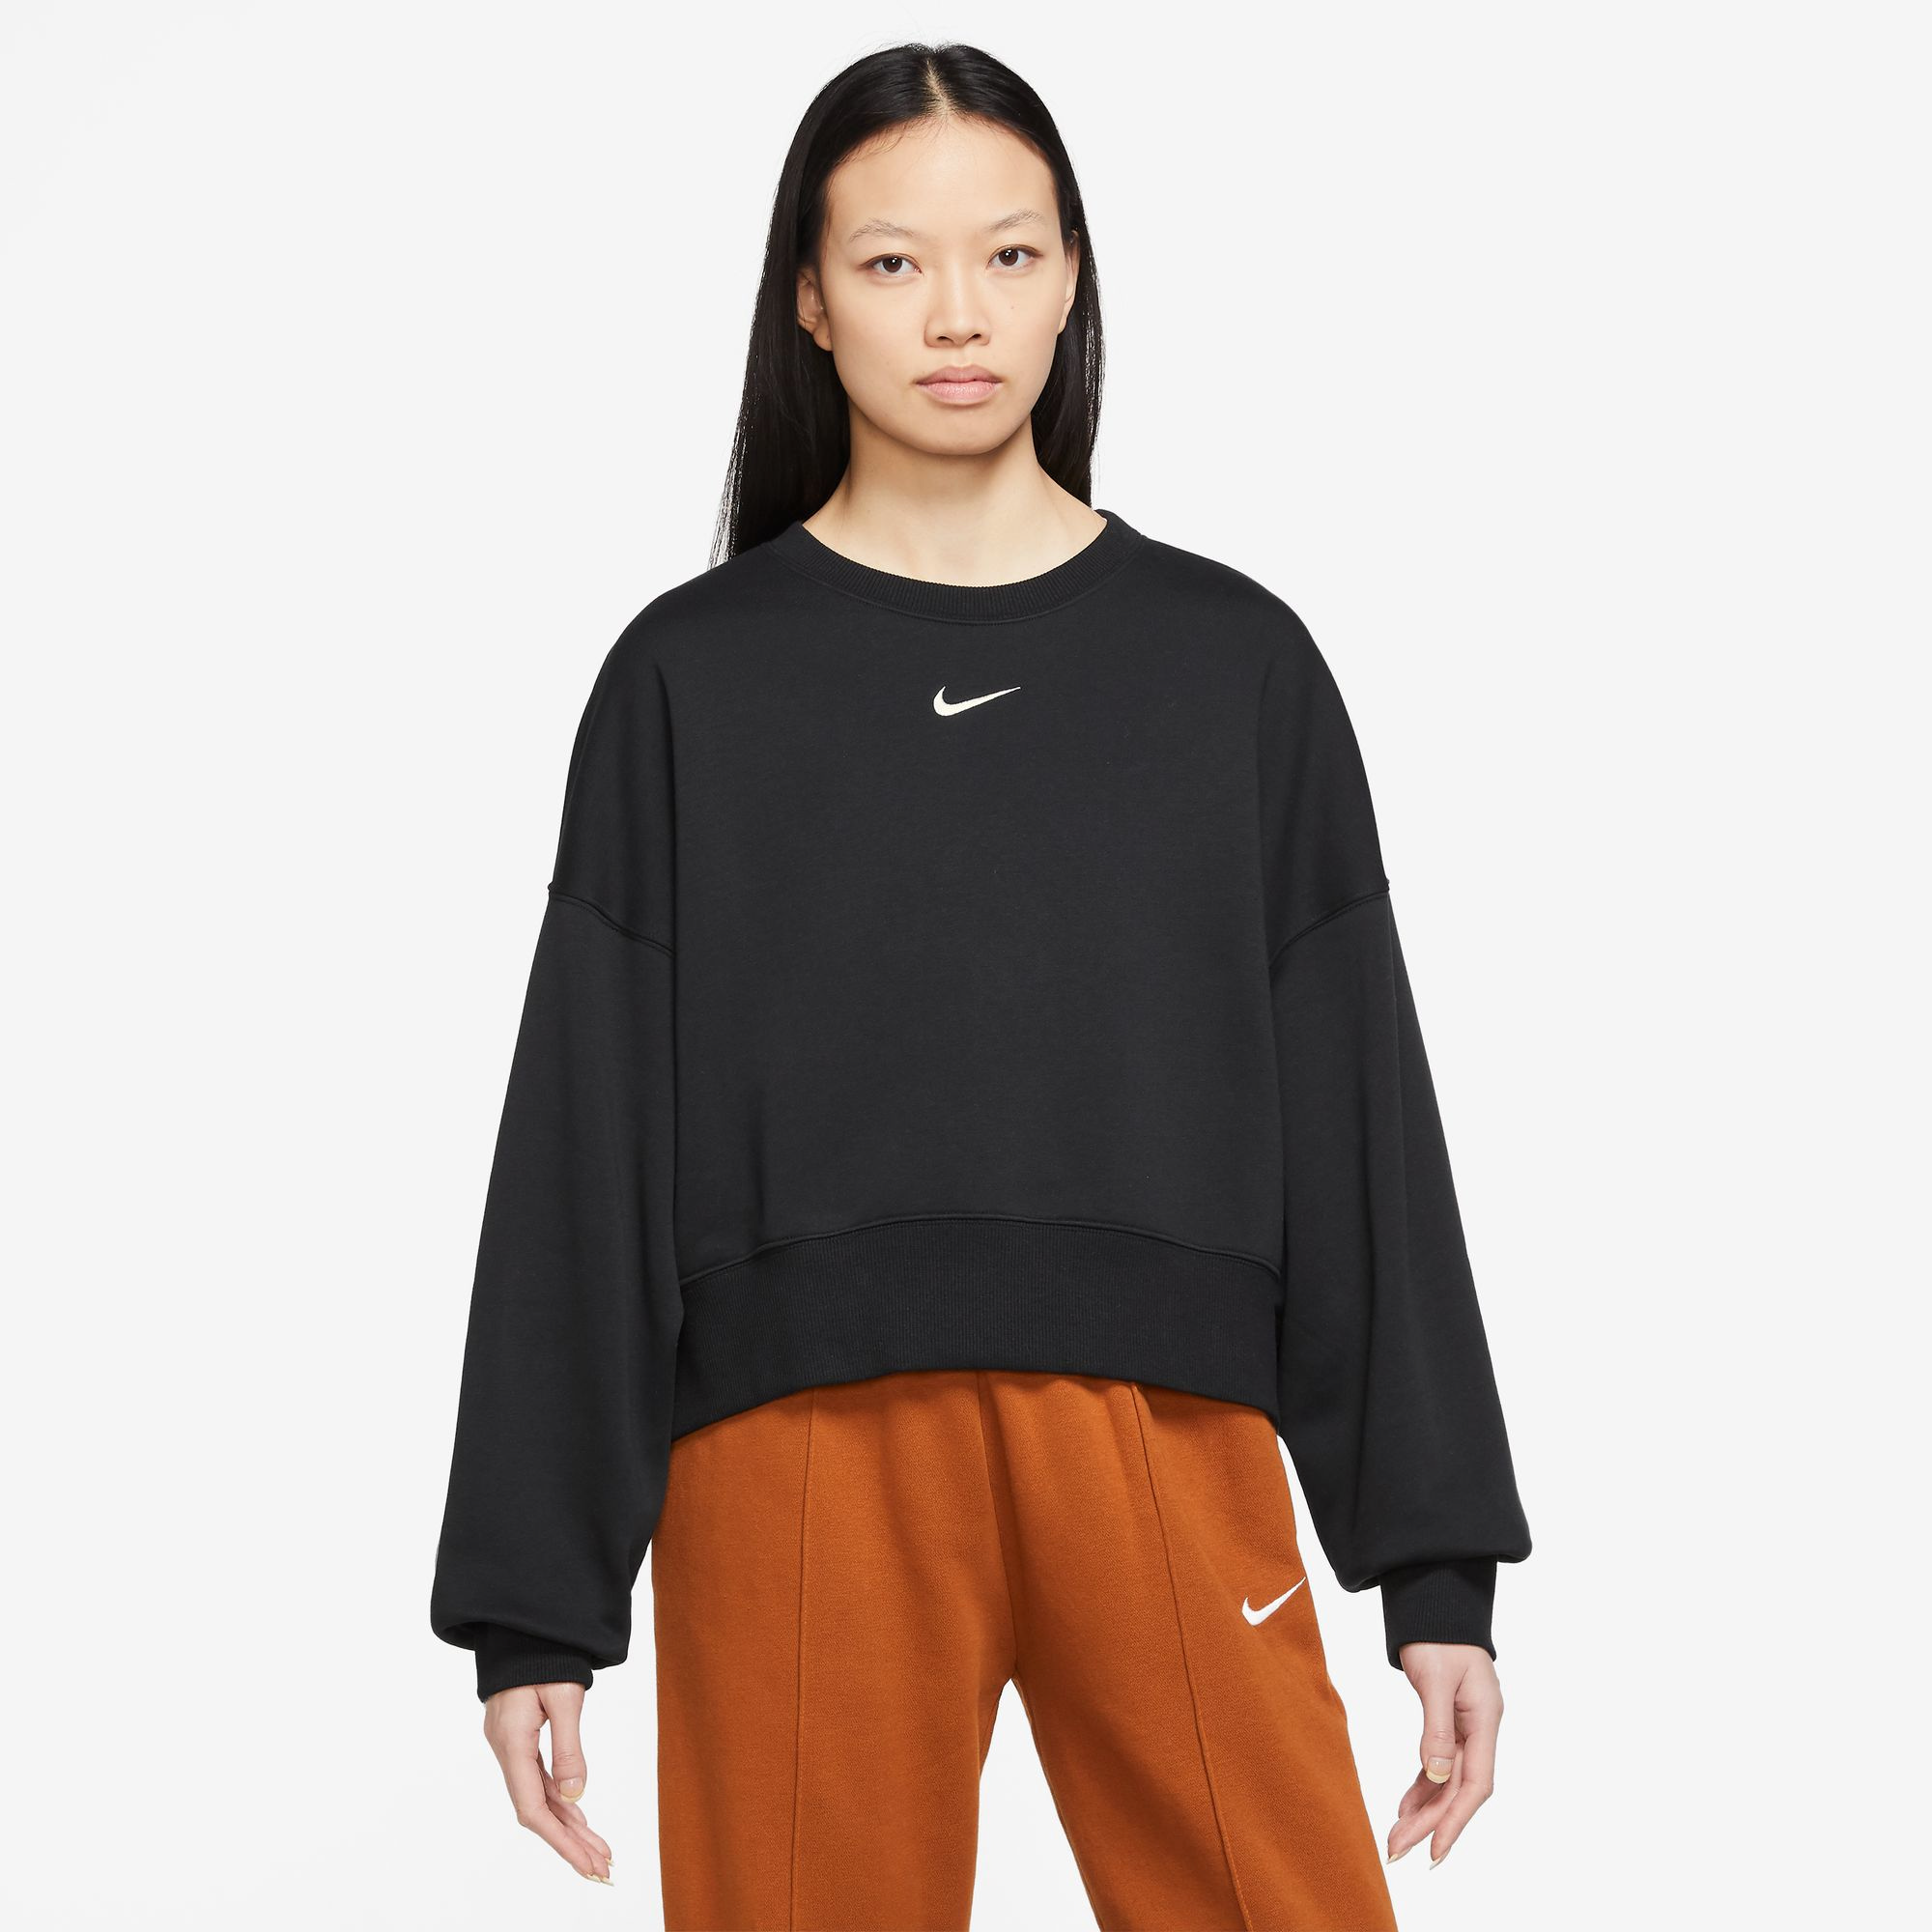 NIKE Sportswear Womens Oversized Crop Crewneck Sweatshirt, 52% OFF